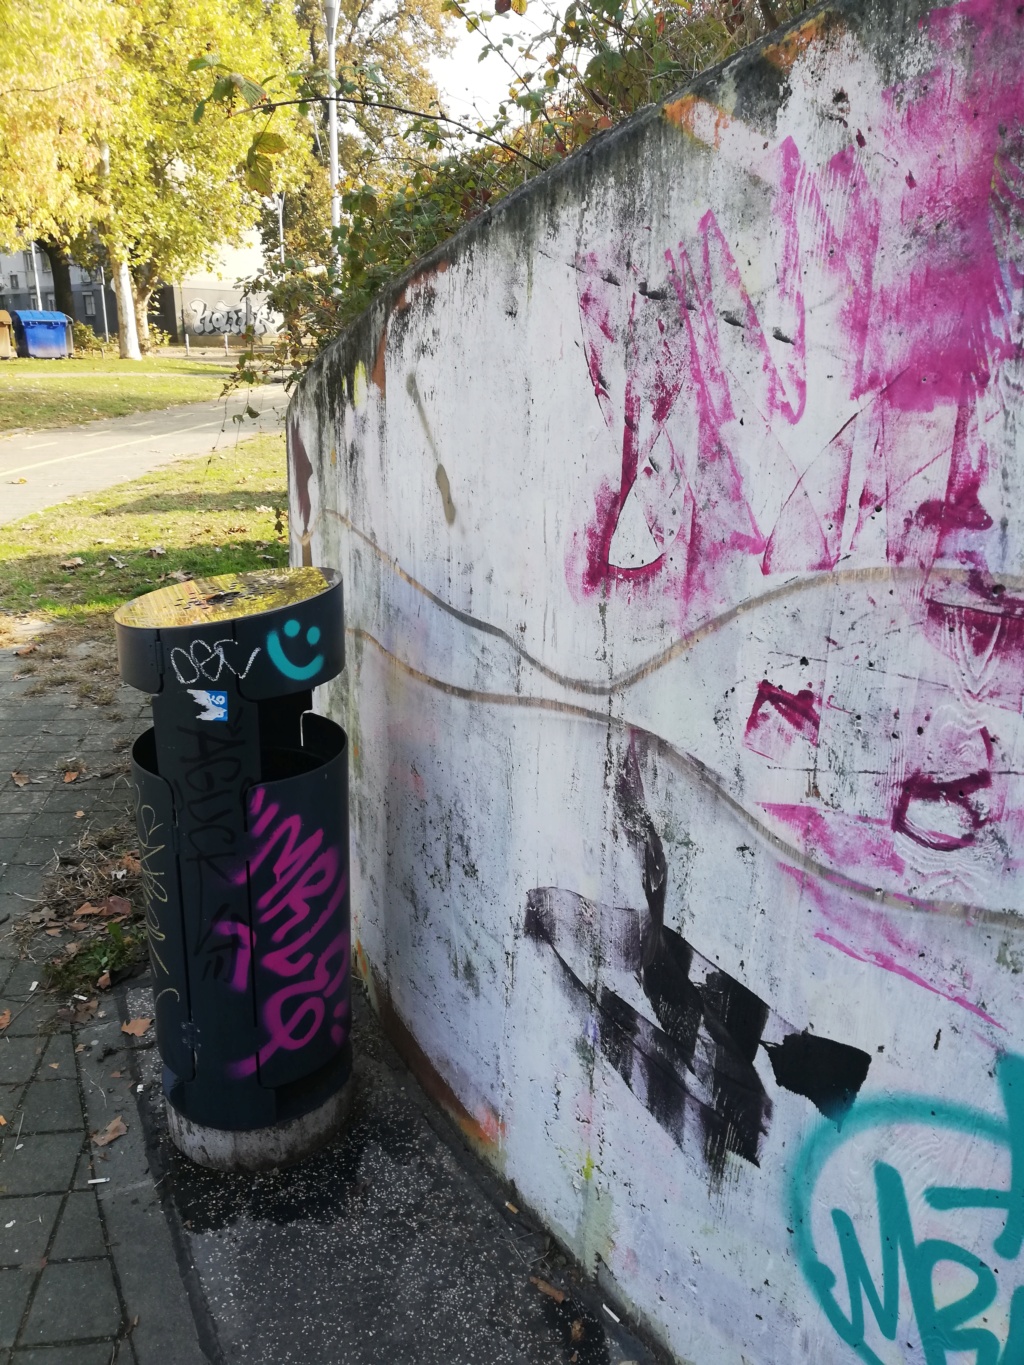 Senfov stranacki kolega naredio da se ukloni mural posvecen braniteljima i Vukovaru.Prosvjednici se okupljaju.Cekaju HEP-ovu dozvolu. Img_2710